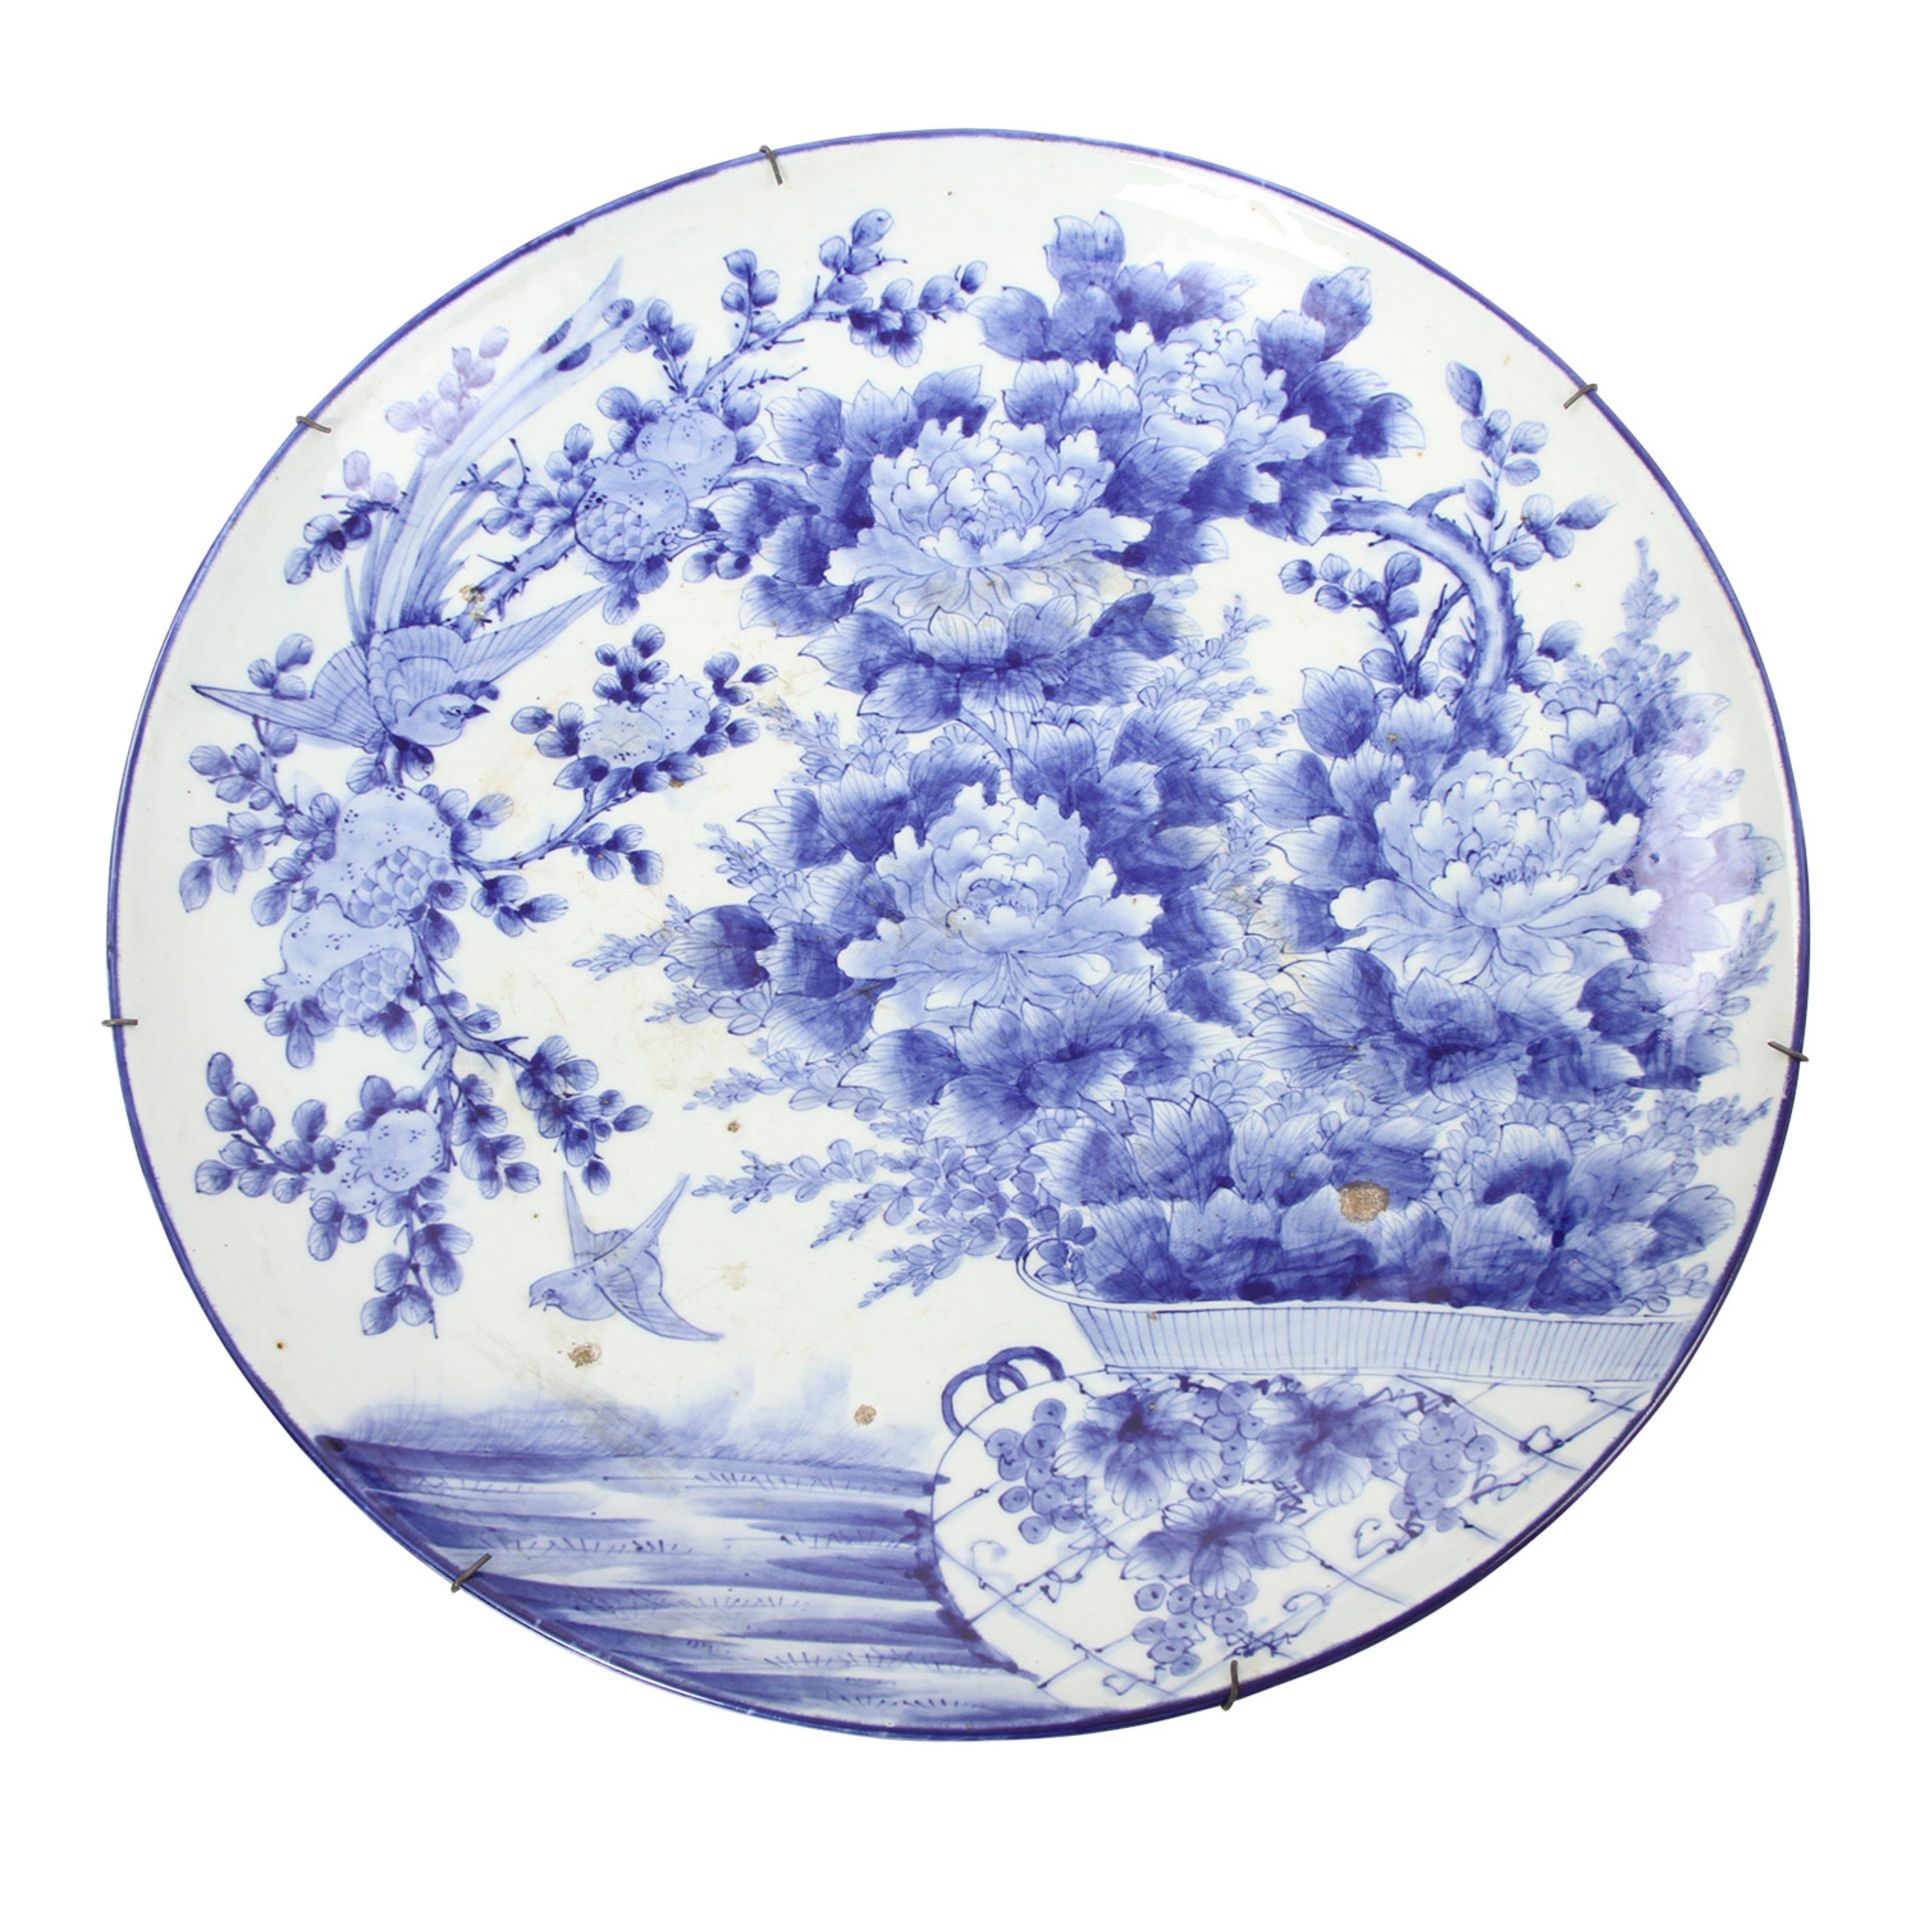 Grosse Rundplatte. CHINA, 19. Jh. unterglasurblaue Malerei u.a. von Crysanthemen und Paradiesvögeln,